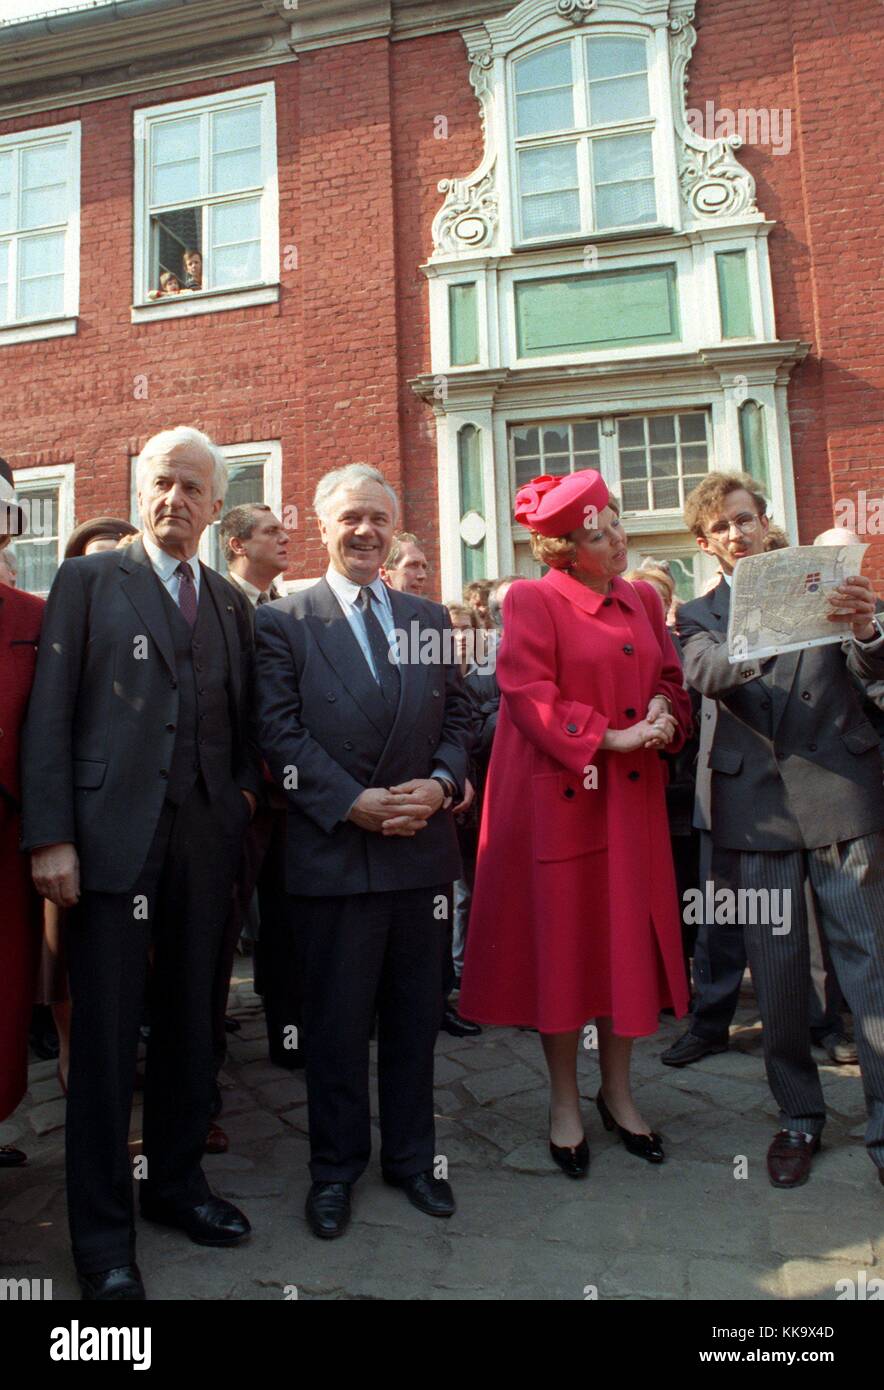 Beatriz, Reina de los Países Bajos, recibe explicaciones detalladas de Theodor lessing, el director responsable, sobre planes de restauración para el barrio holandés, fotografiado el 25 de abril de 1991, en Potsdam. Uso | en todo el mundo Foto de stock